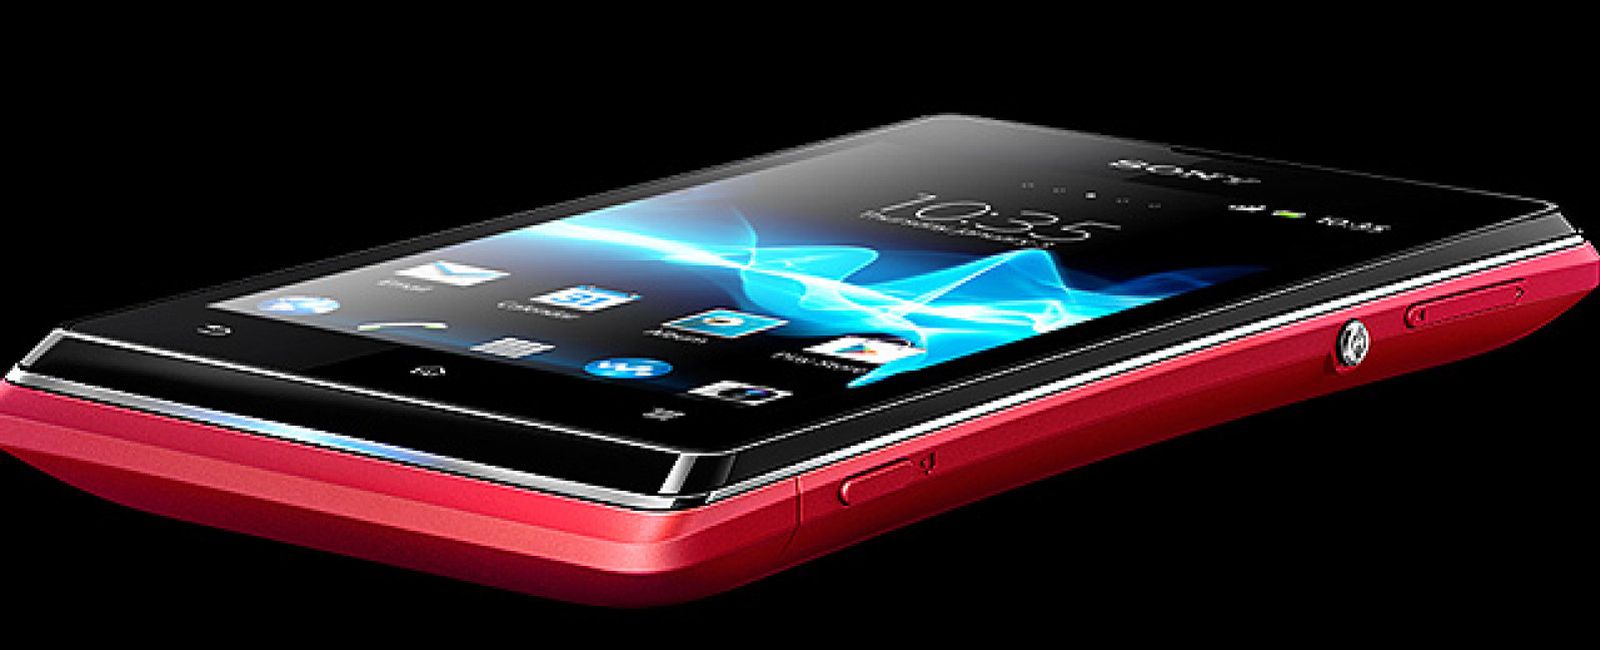 Foto: Sony Xperia E, un 'smartphone' con doble SIM y ahorro inteligente de batería